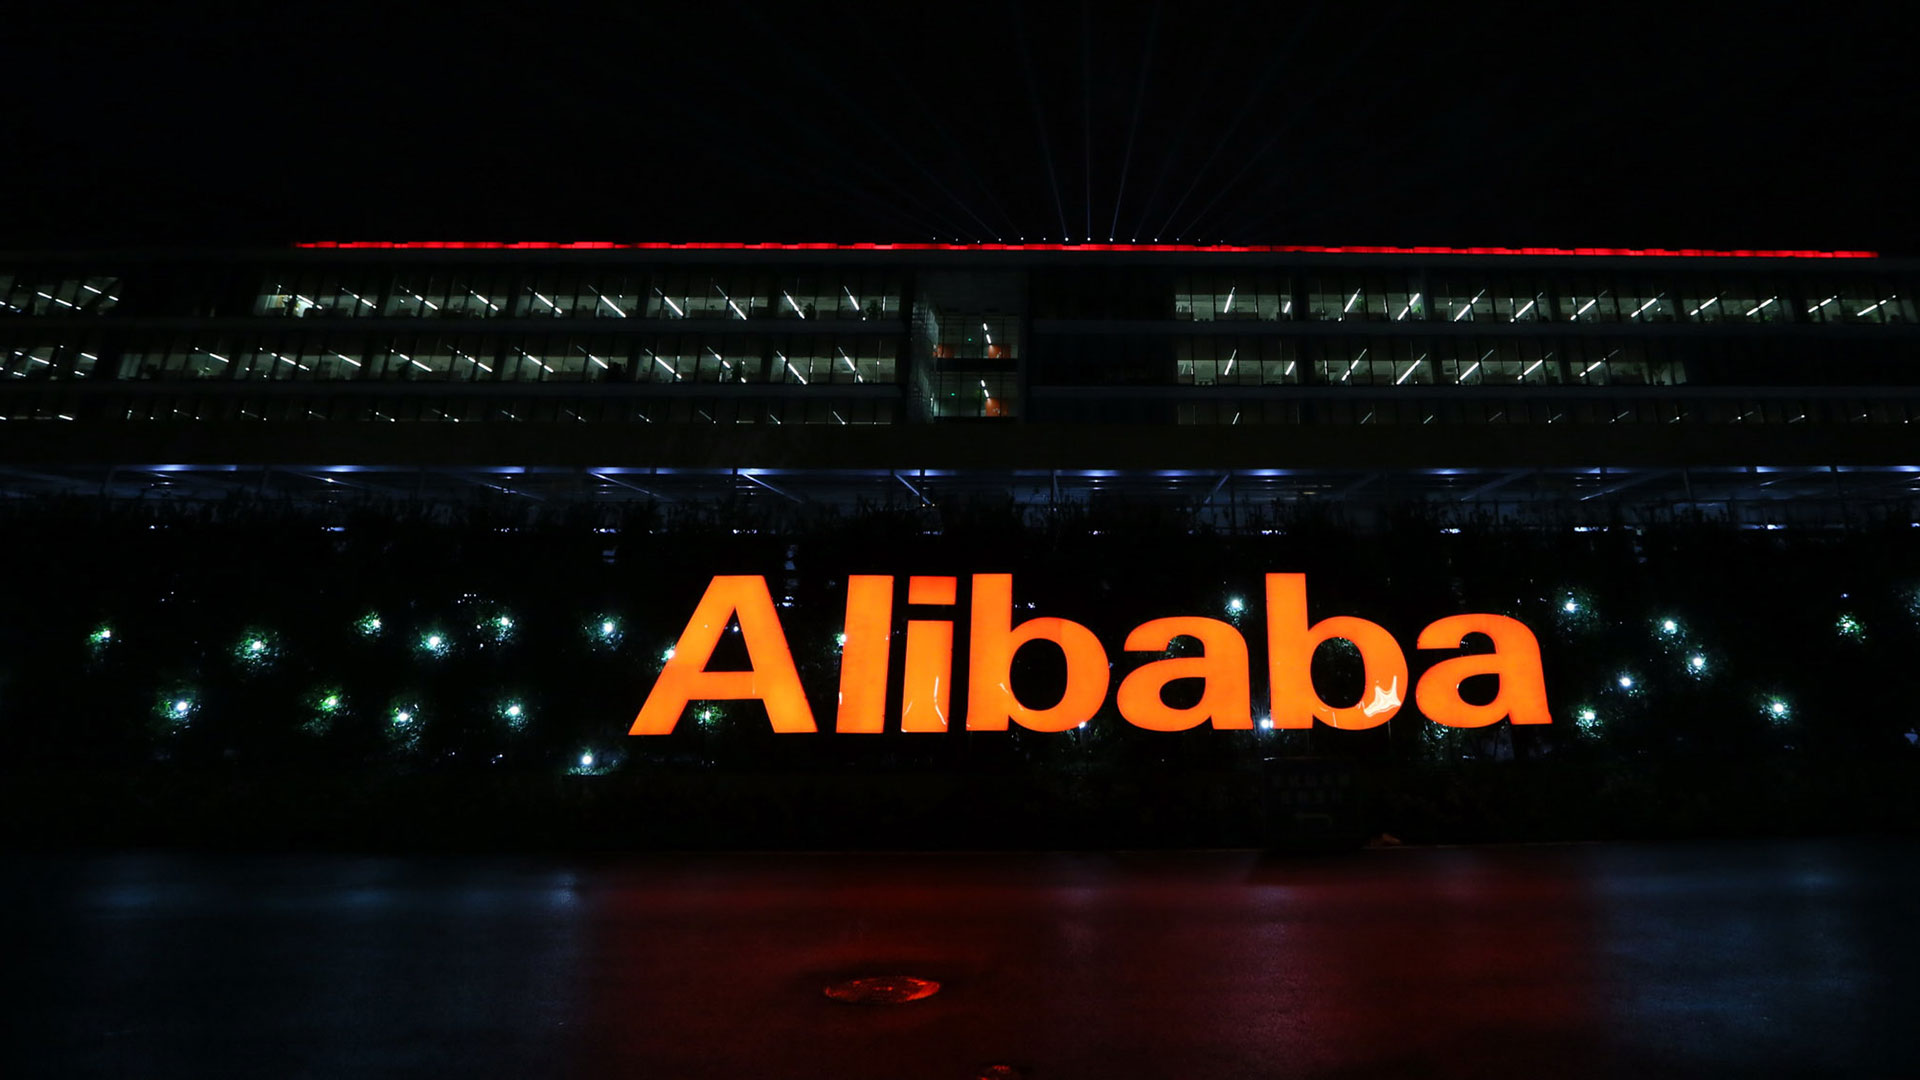 Alibaba: Nach dem Crash – so urteilen die Analysten